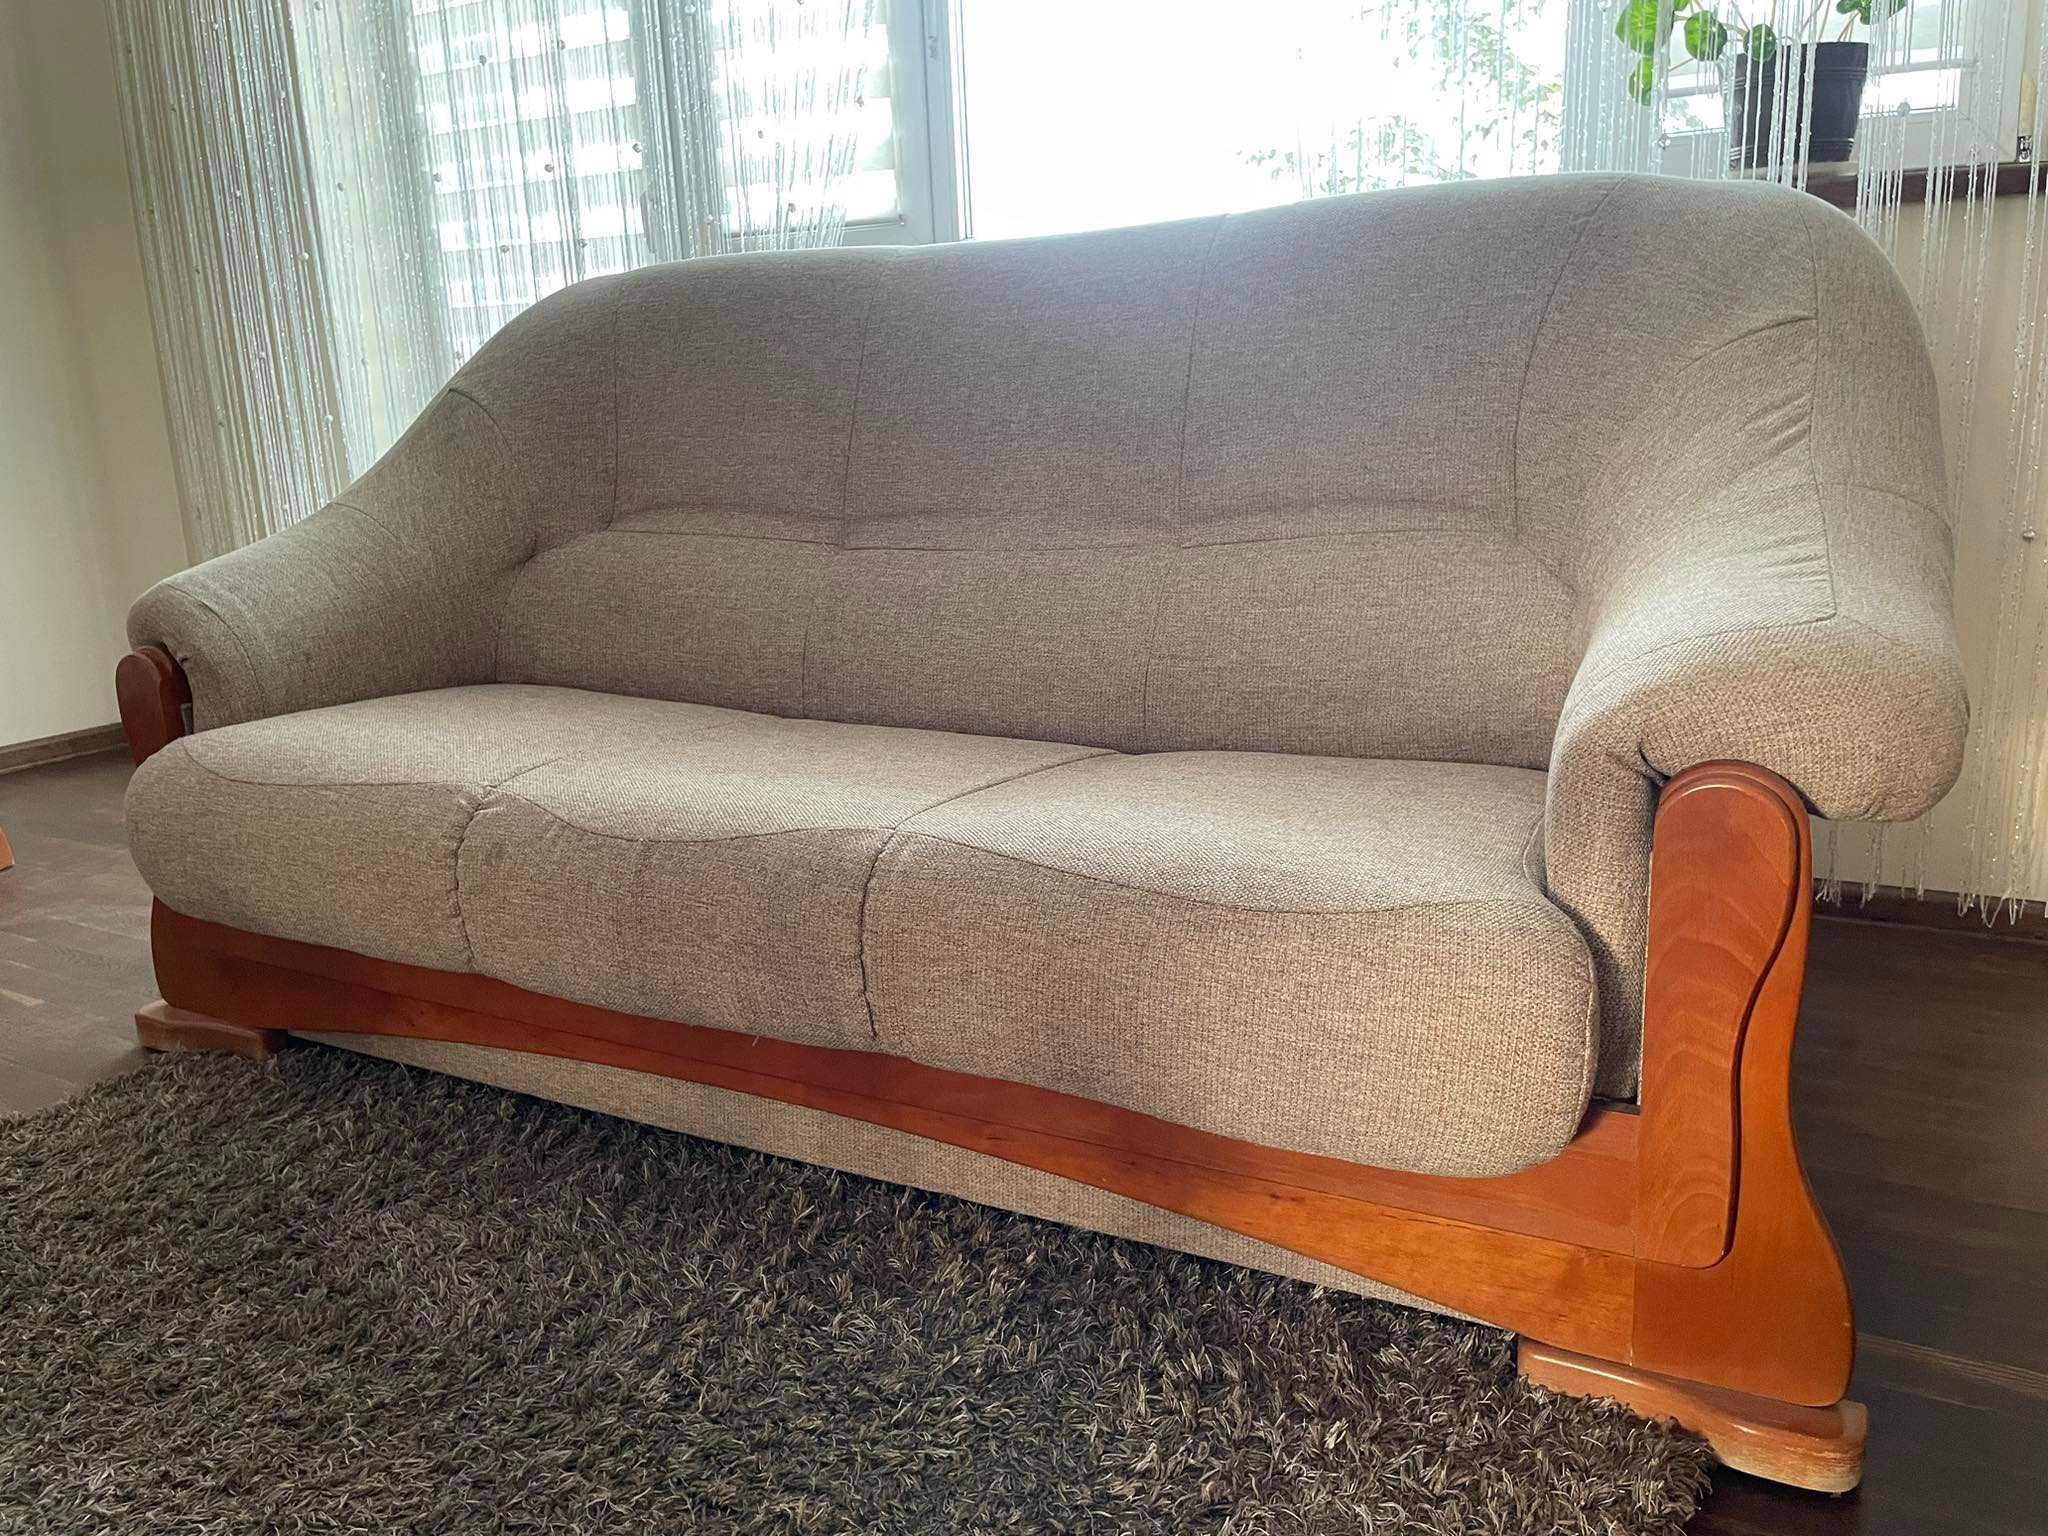 Komplet mebli kanapa, fotele, ława i komoda